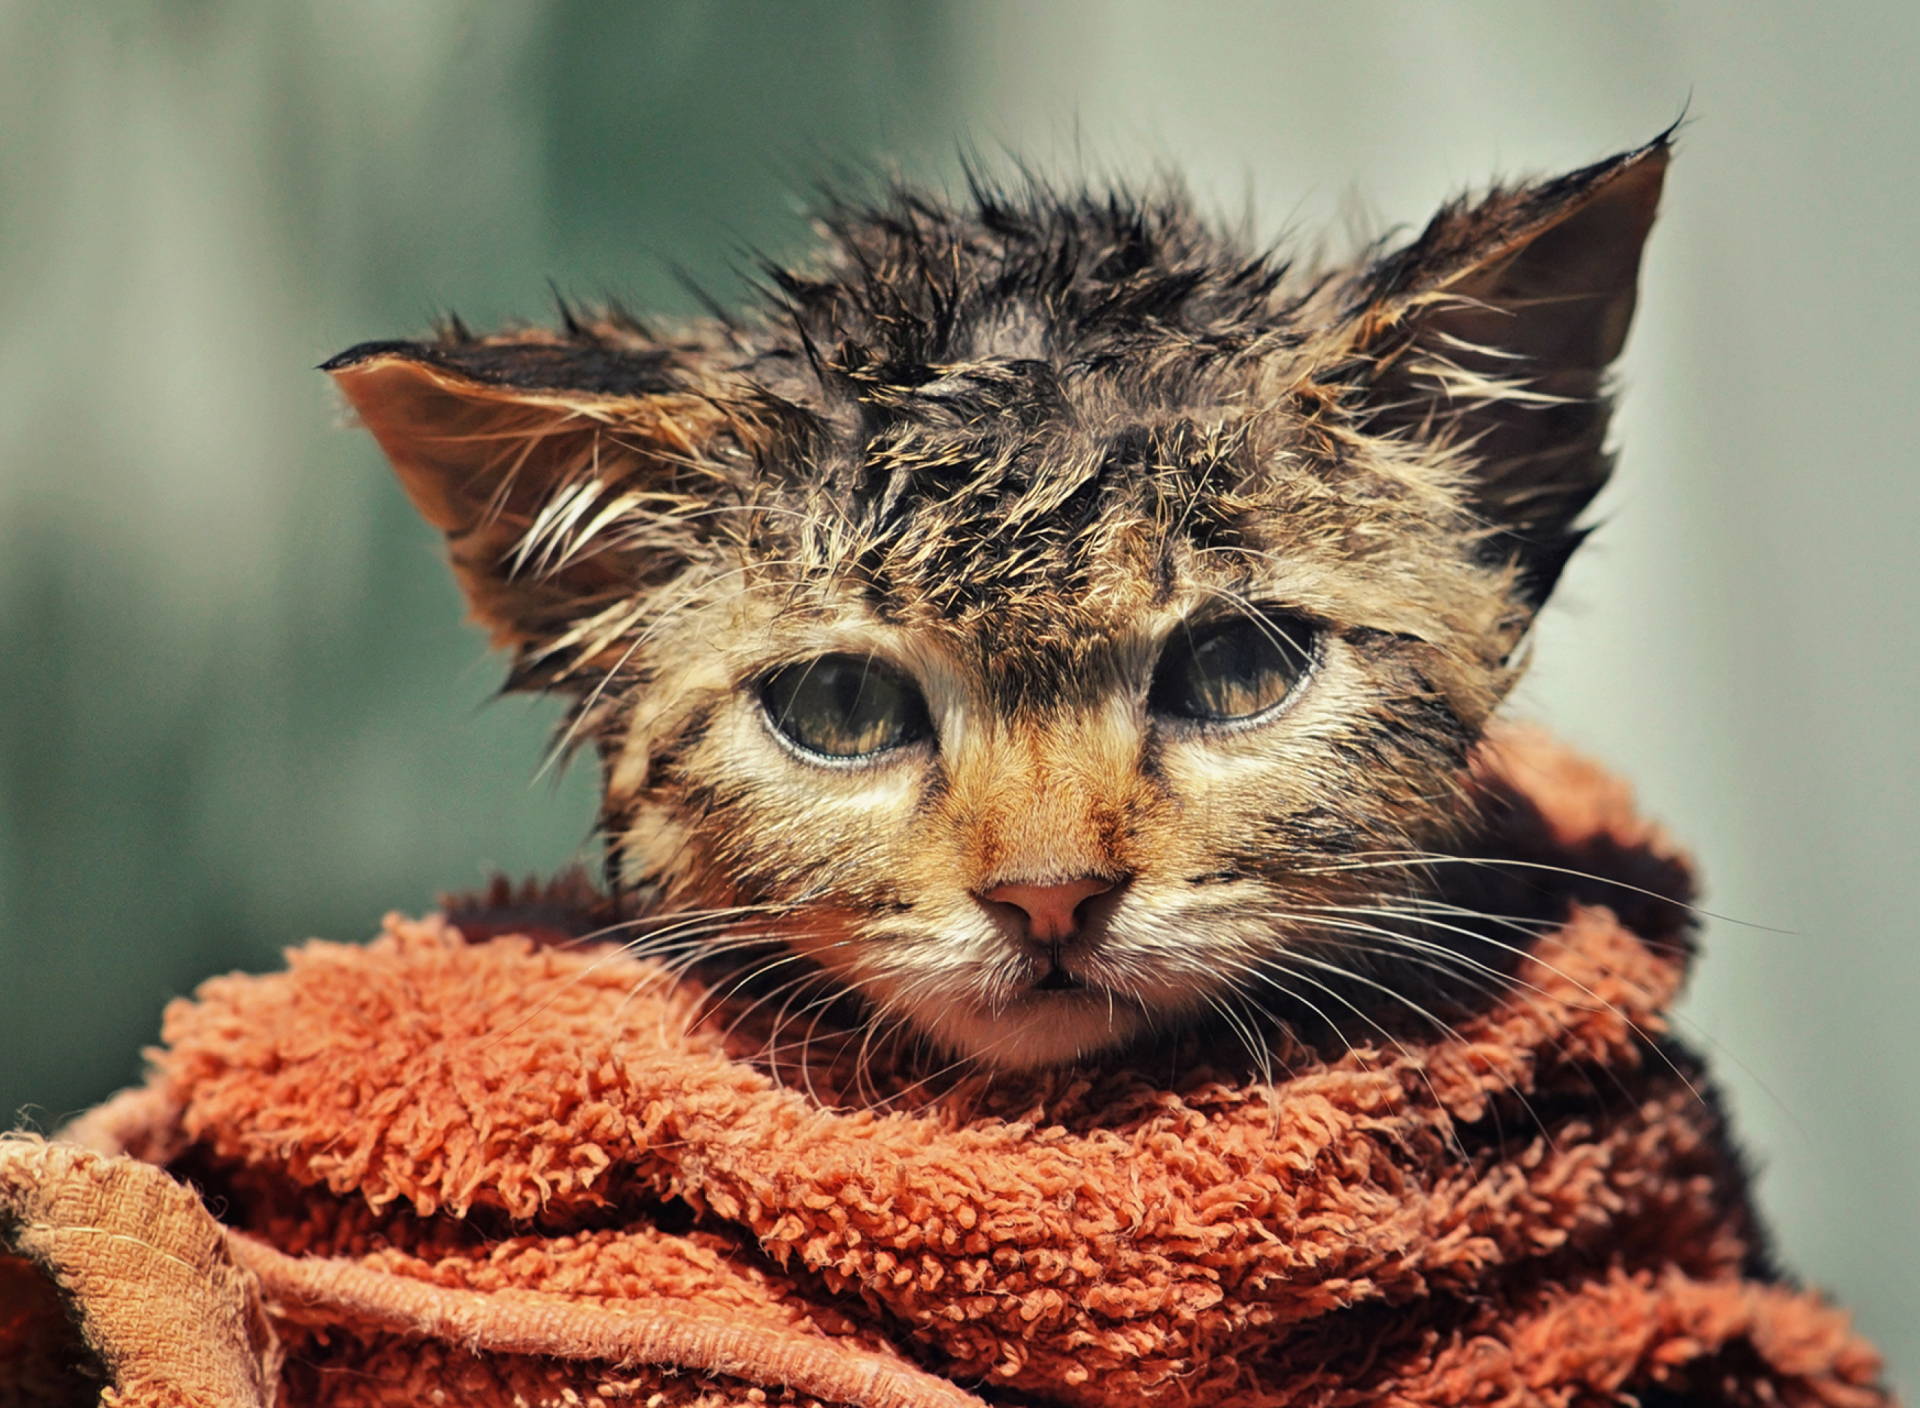 Cute Wet Kitty Cat After Having Shower wallpaper 1920x1408